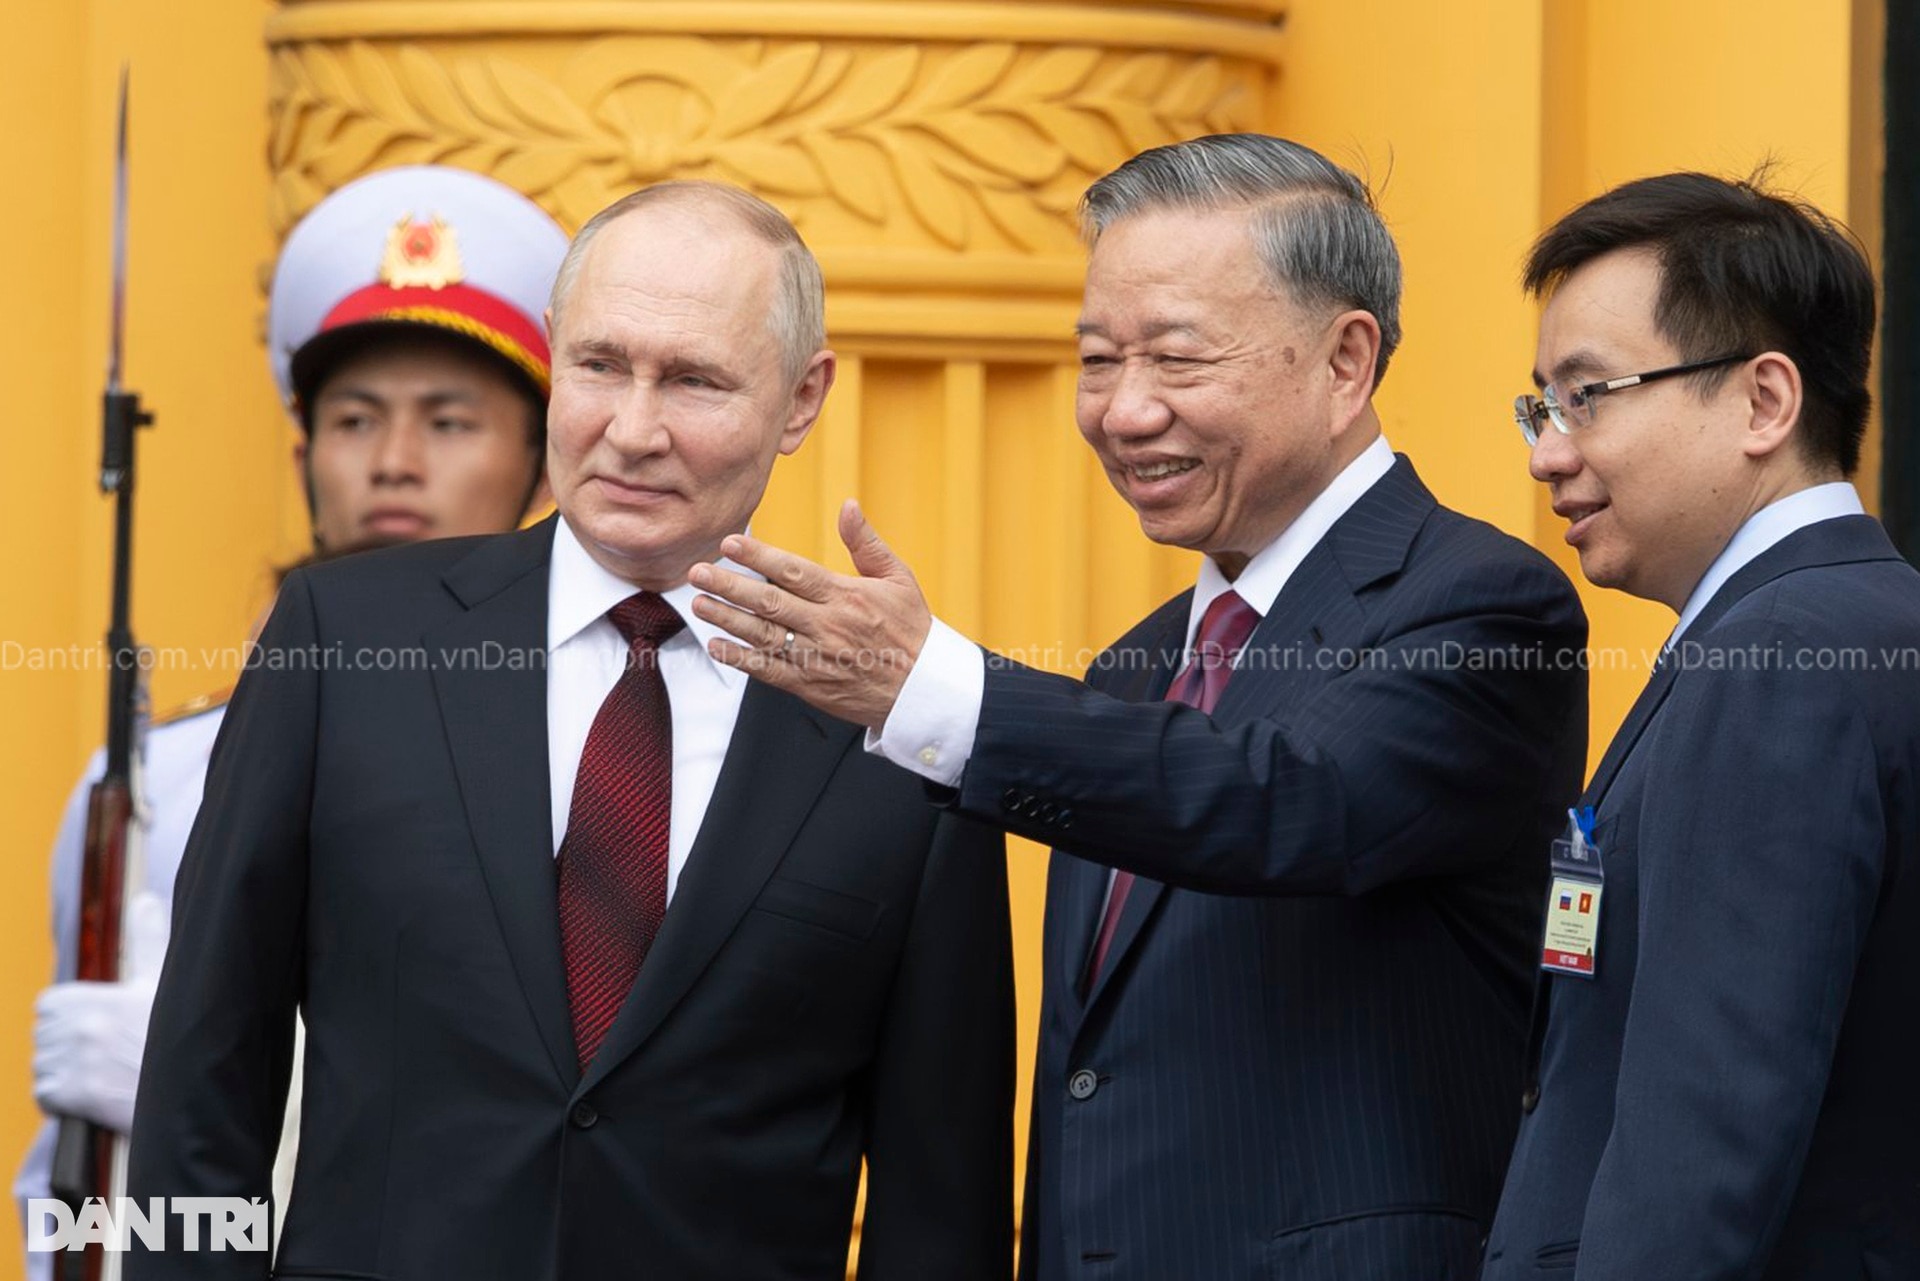 22 giờ bận rộn của Tổng thống Putin trong chuyến thăm Việt Nam - 6